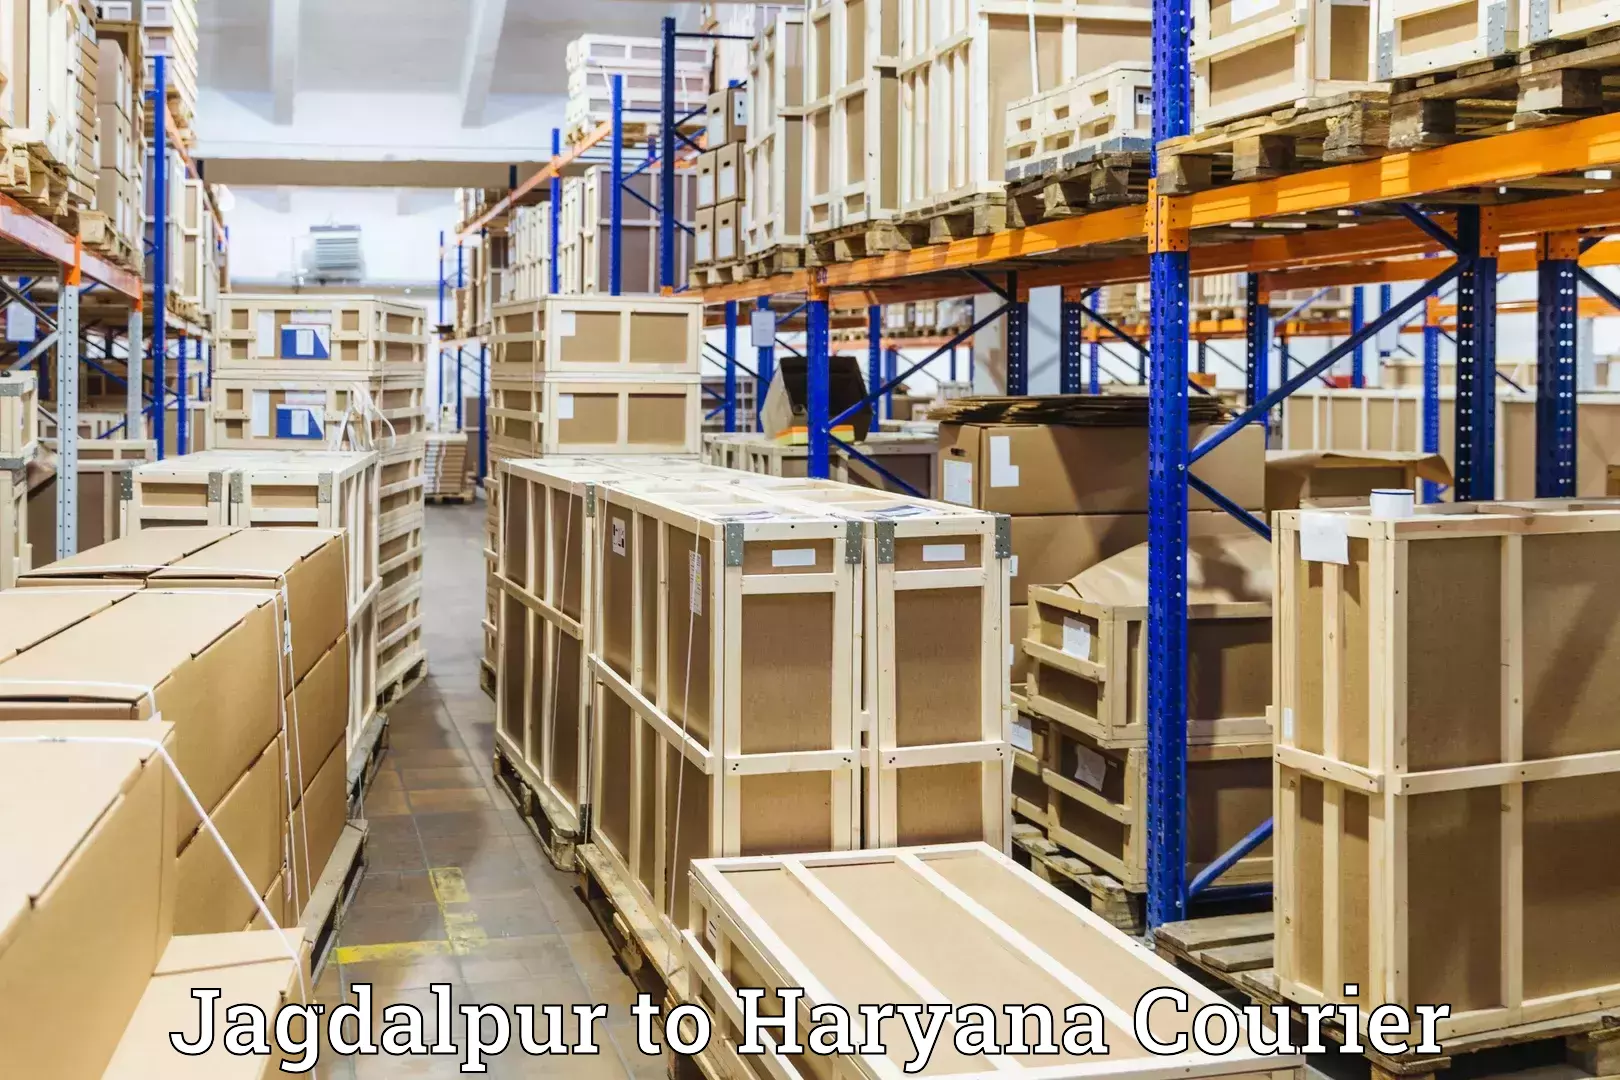 Baggage shipping experience Jagdalpur to Kalanwali